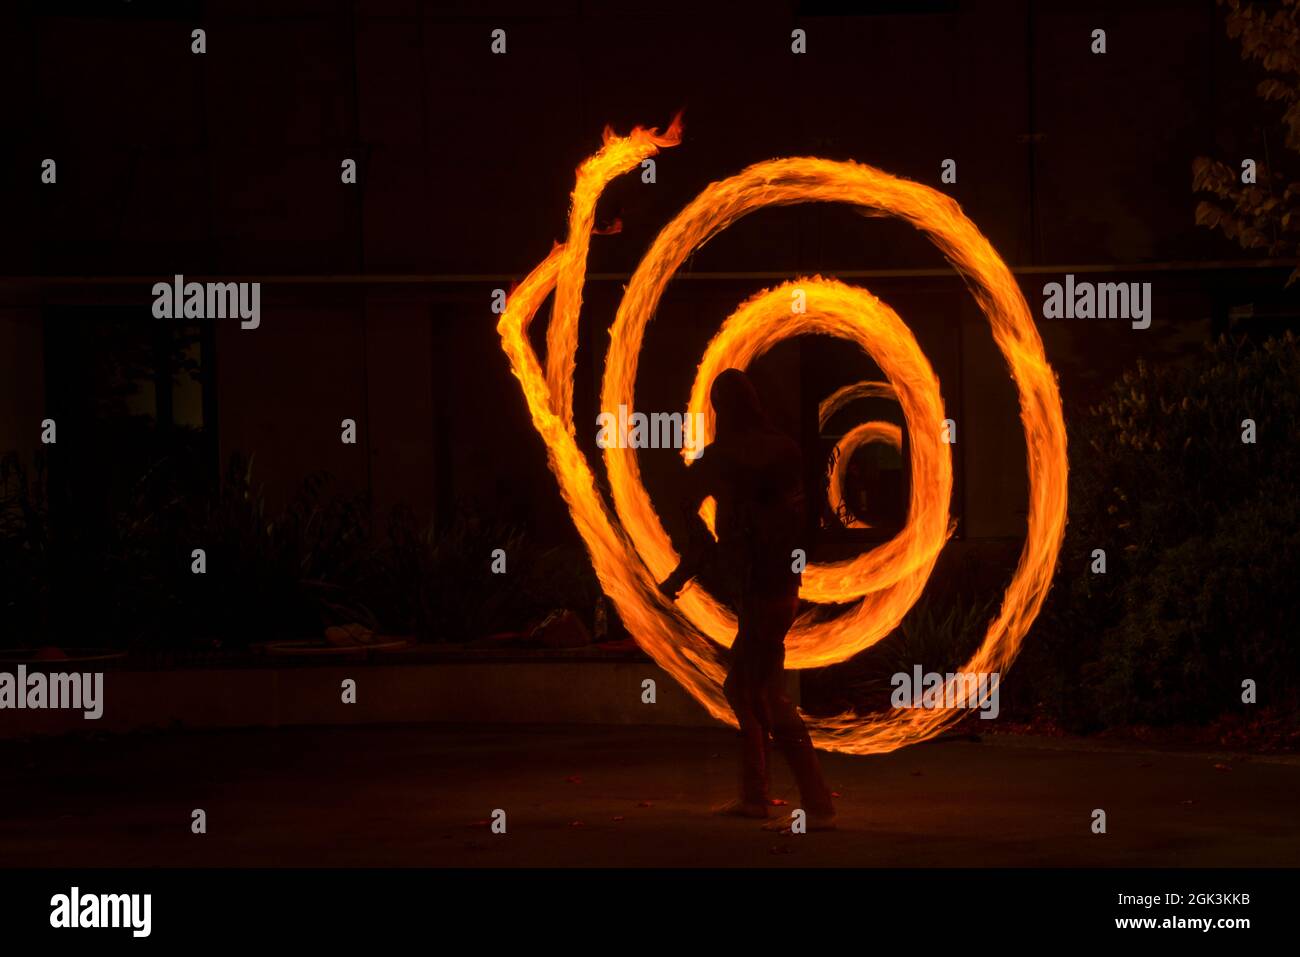 Straßenkünstler jongliert mit brennenden Poi bei der Feuervorstellung. Langzeitbelichtung Bild der abstrakten Feuer Licht Malerei. Stockfoto